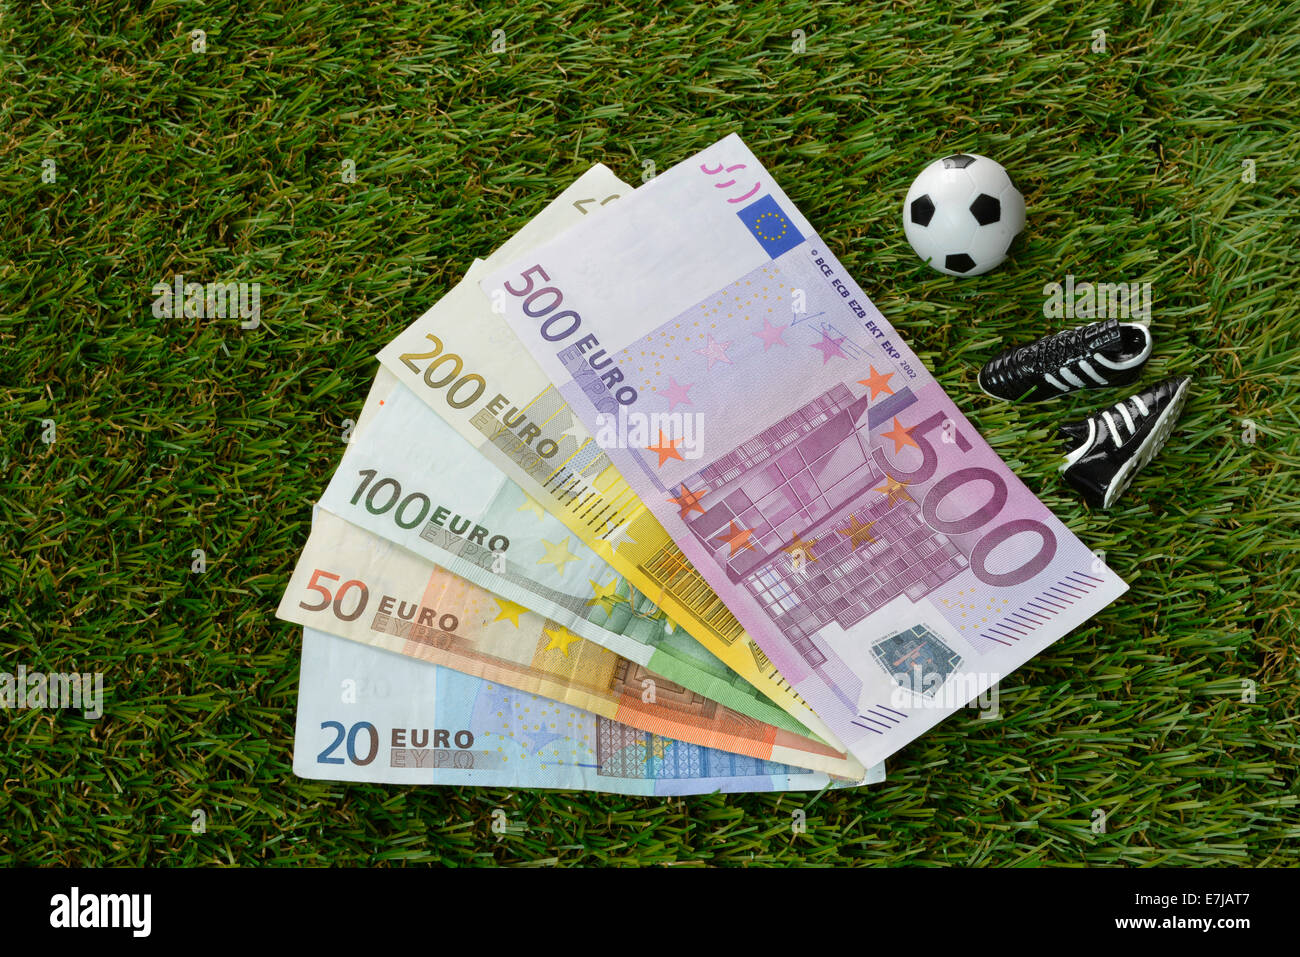 Les projets de l'euro, football, chaussures de football Banque D'Images